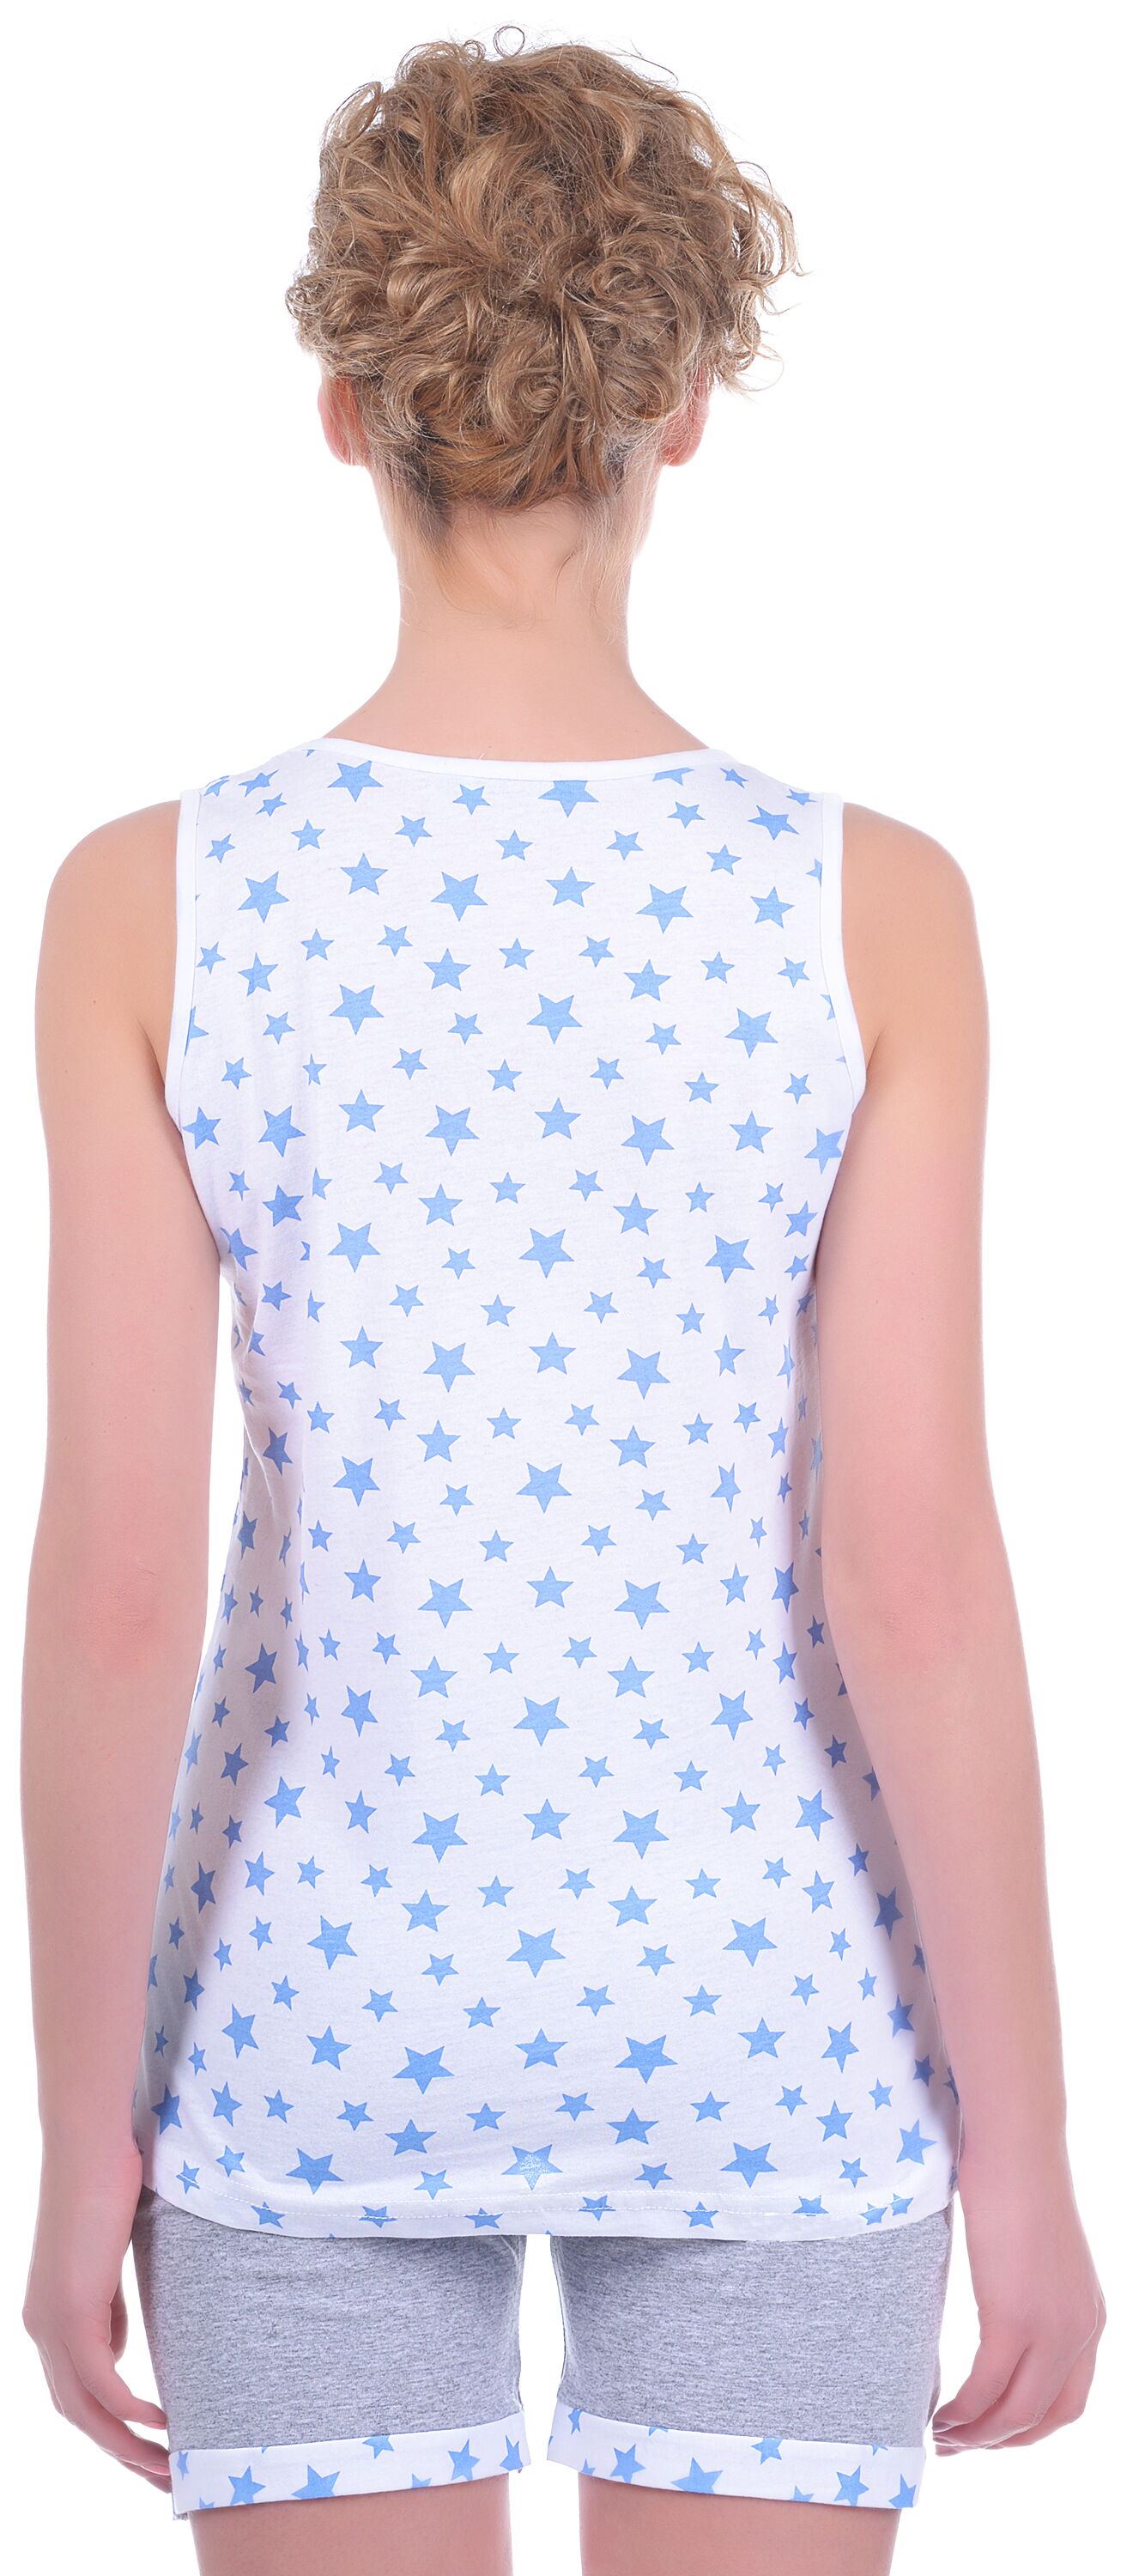 Комплект женский (майка+шорты) MISS FIRST STARS голубой - размеры